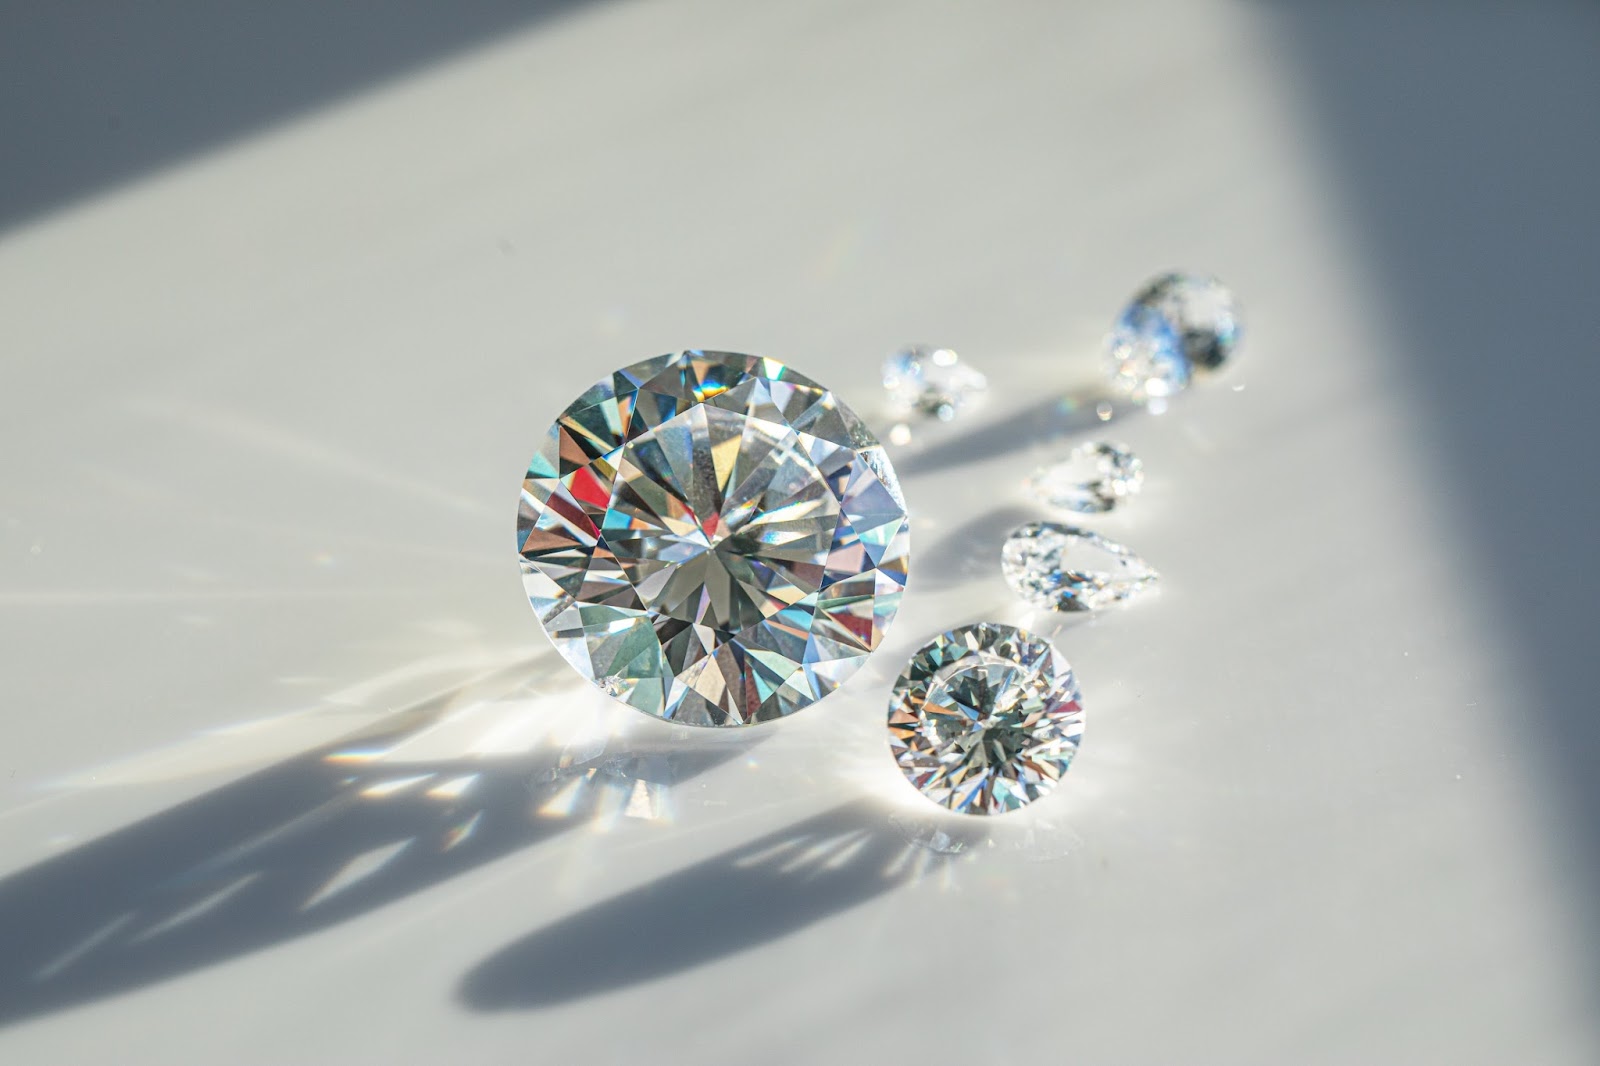 Primo piano di un pendente di diamante naturale incontaminato, che evidenzia la sua squisita rarità e l'eleganza senza tempo.